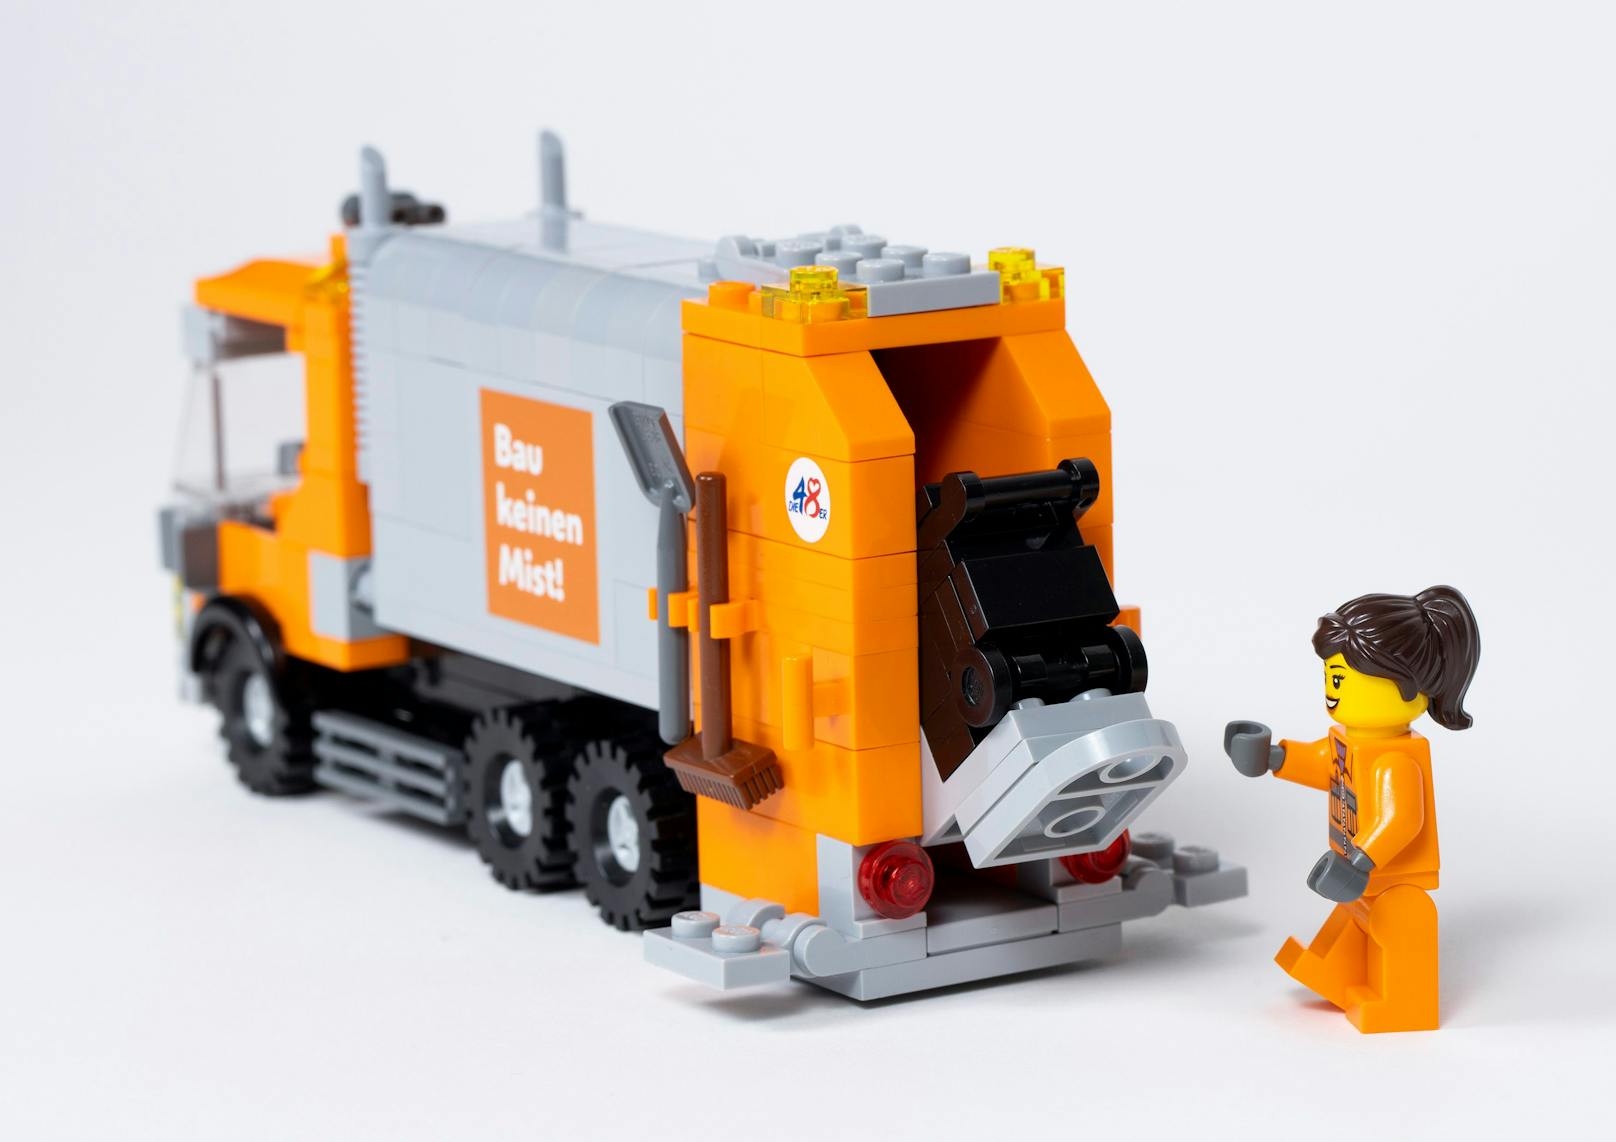 Das aus insgesamt 263 Einzelteilen bestehende Set enthält ein Müllsammelfahrzeug mit beweglichen Teilen, zwei orangene Figuren, sechs Behälter mit verschiedenen Aufklebern sowie eine Bauanleitung.